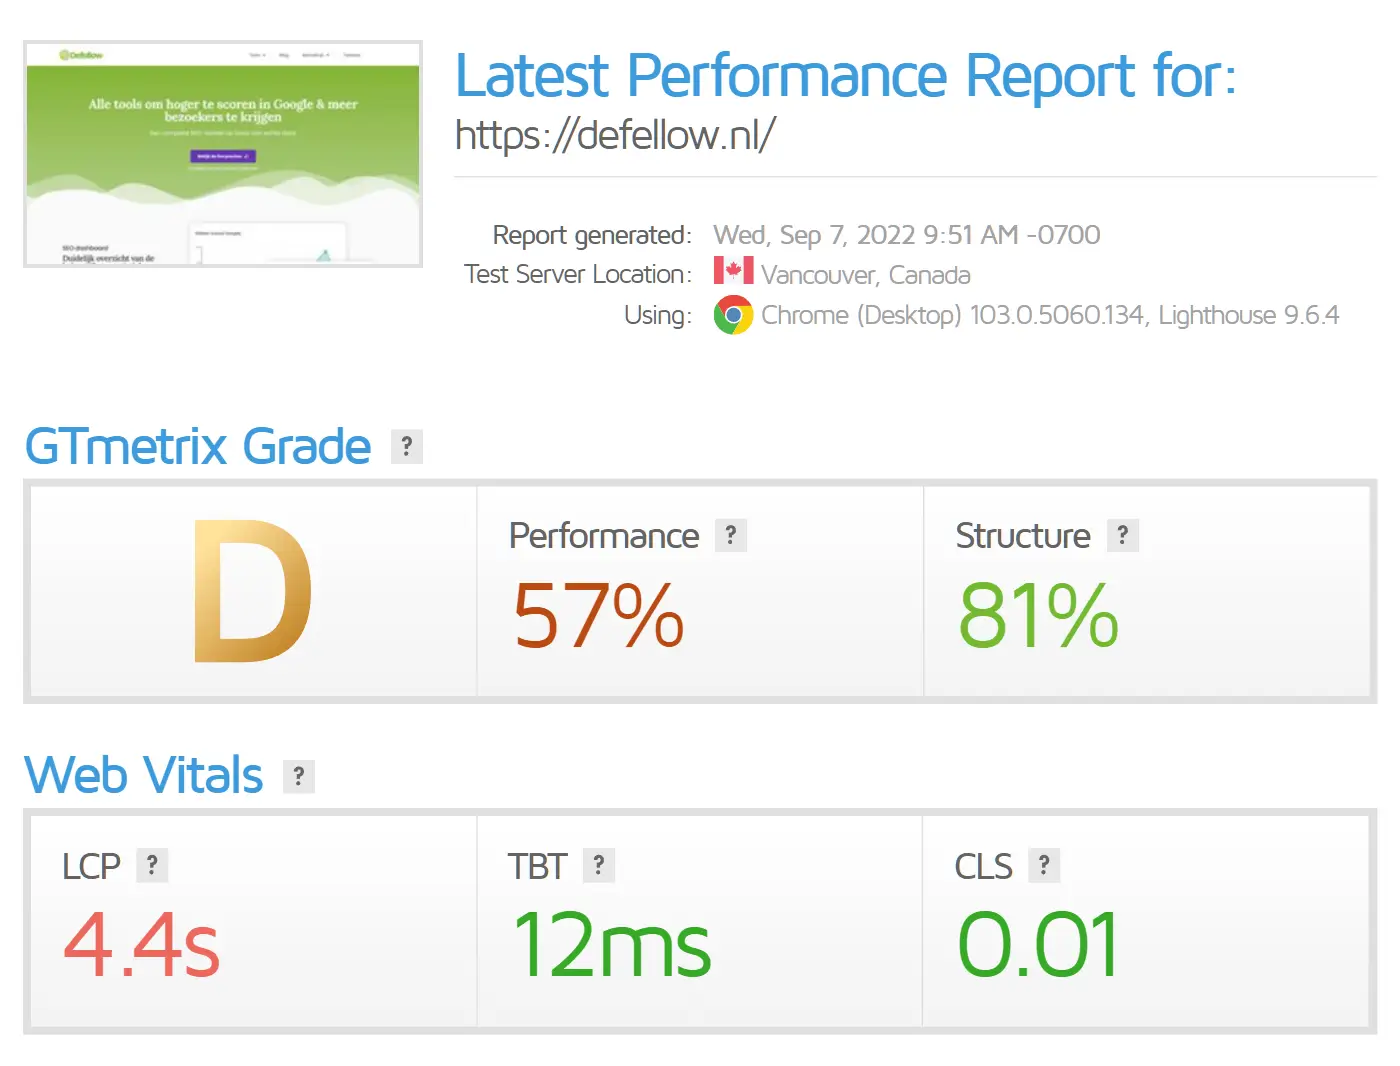 GTmetrix geeft tijdens de nulmeting een D en een performance van 57%